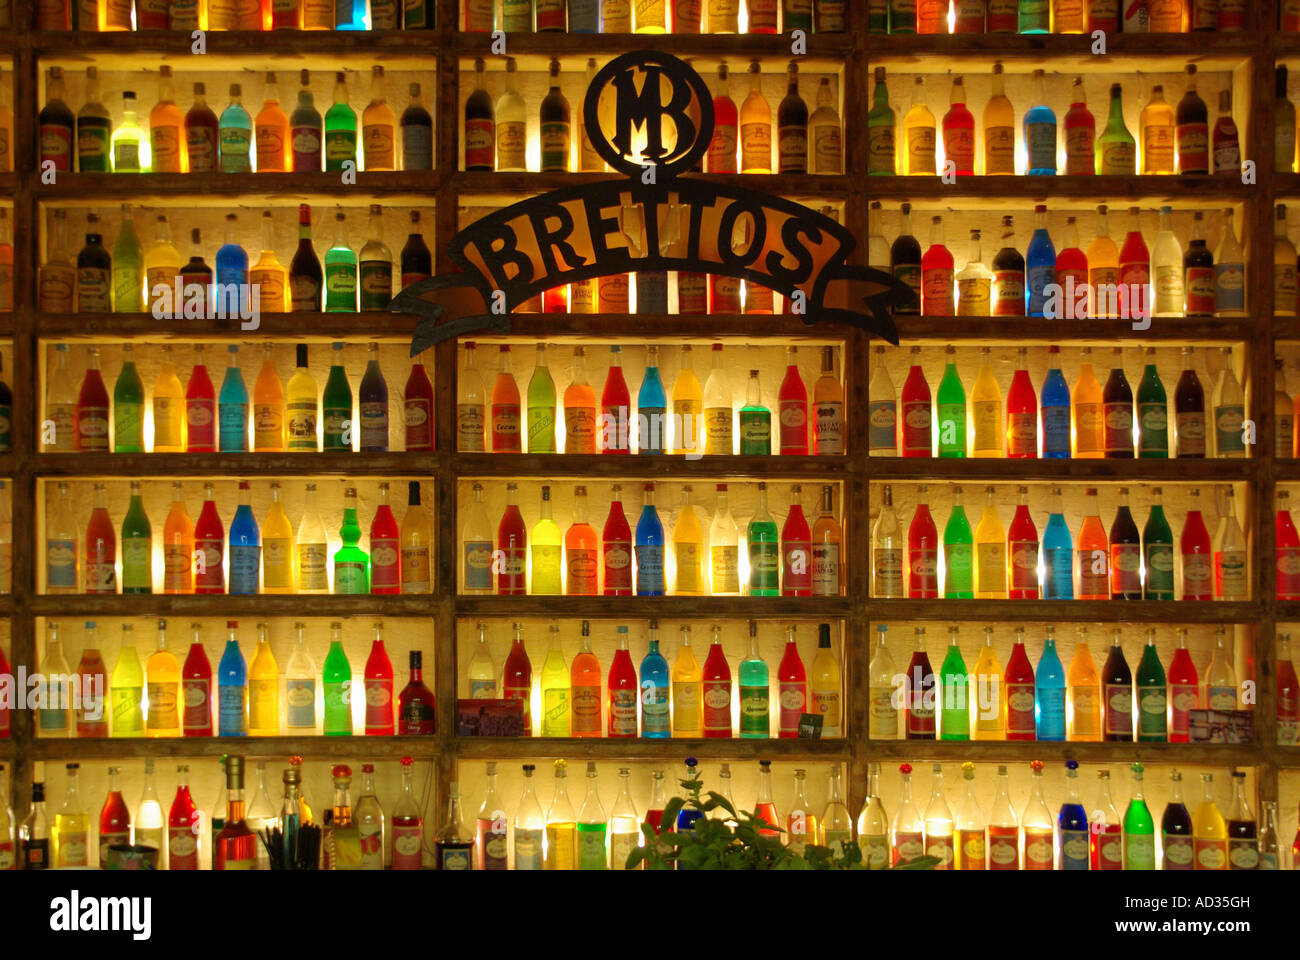 Brettos signe de marque et l'intérieur lounge bar historique Athènes Plaka distillerie retour coloré bar Etagères murales multicolores bouteilles verre rétroéclairé Grèce Banque D'Images